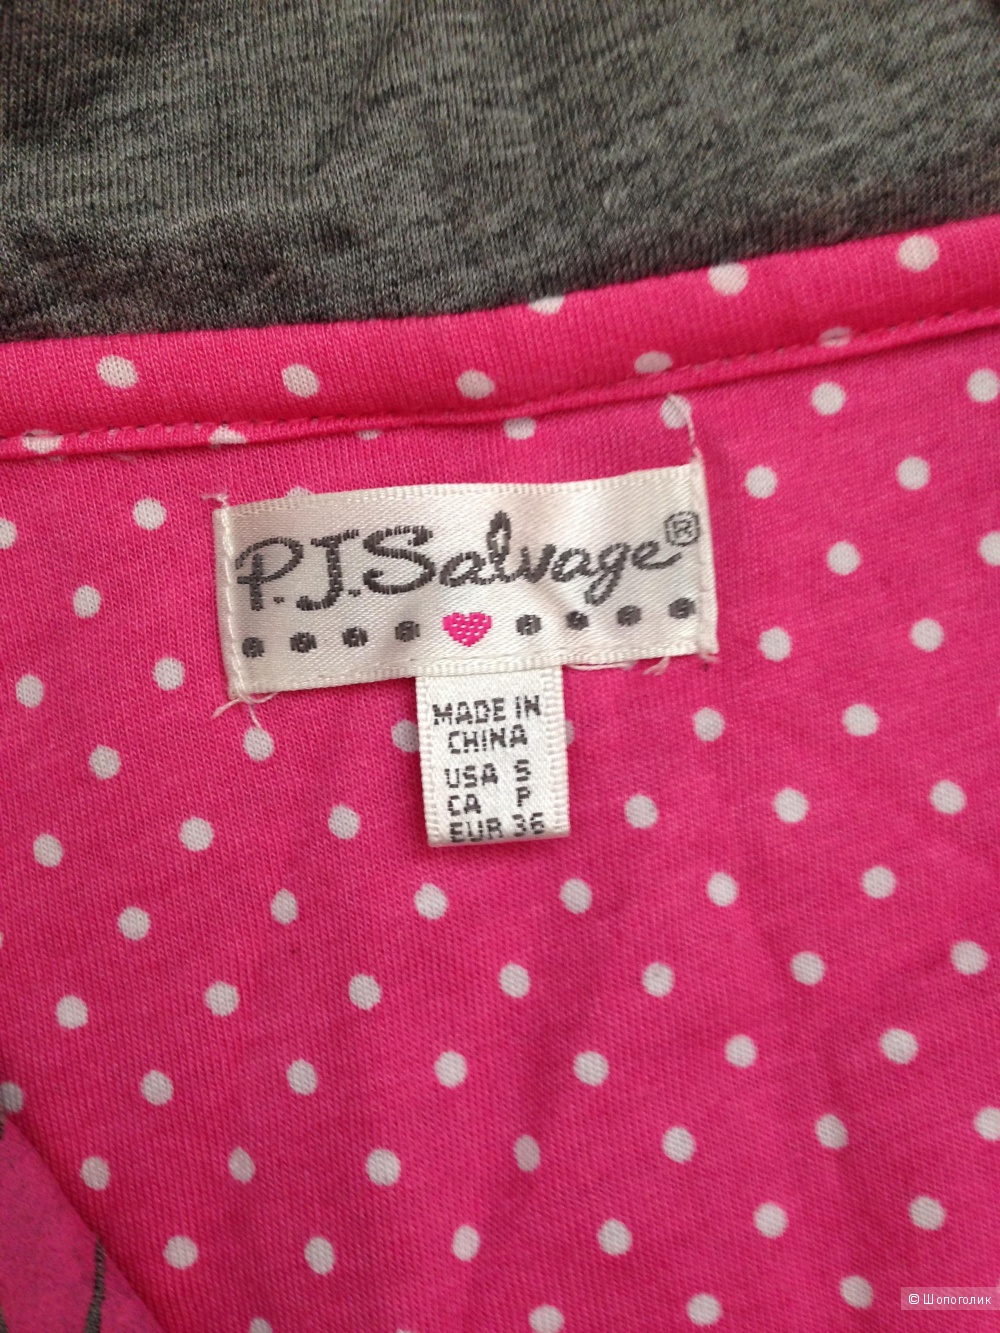 Пижама P.J. SALVAGE размер S